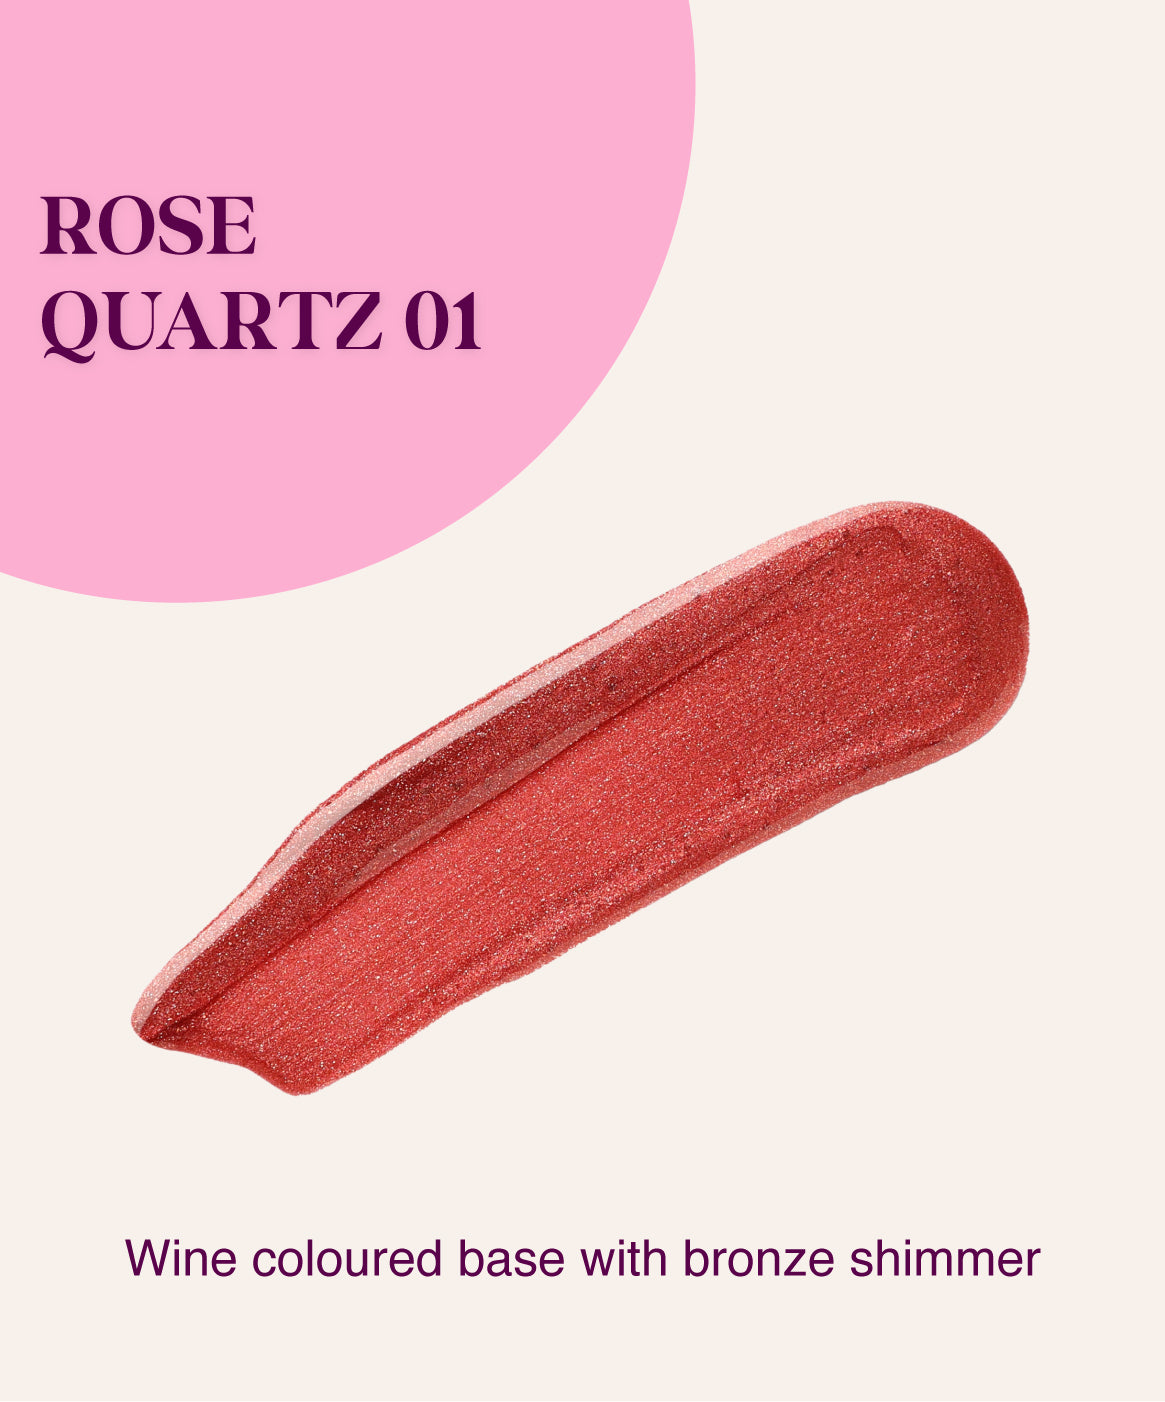 Rose Quartz 01